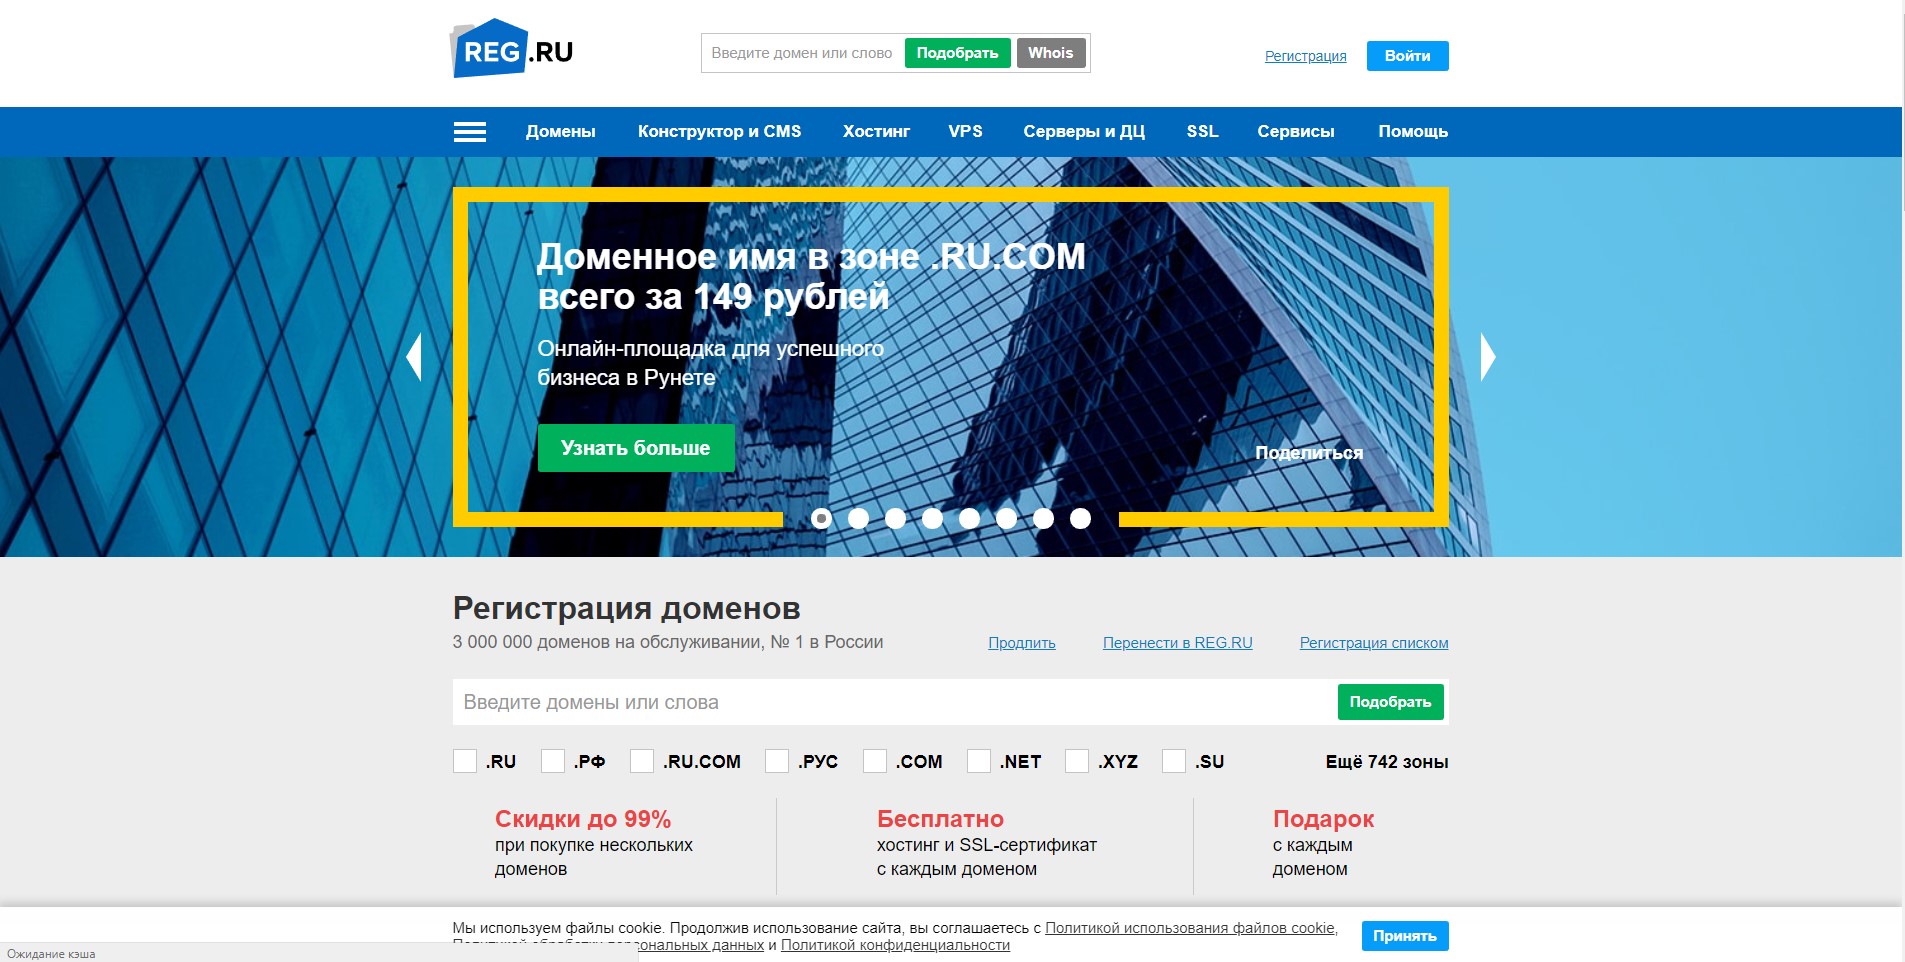 Регистрация домена и хостинг сайта. Домен хостинг и SSL. Бесплатный домен. Reg ru whois